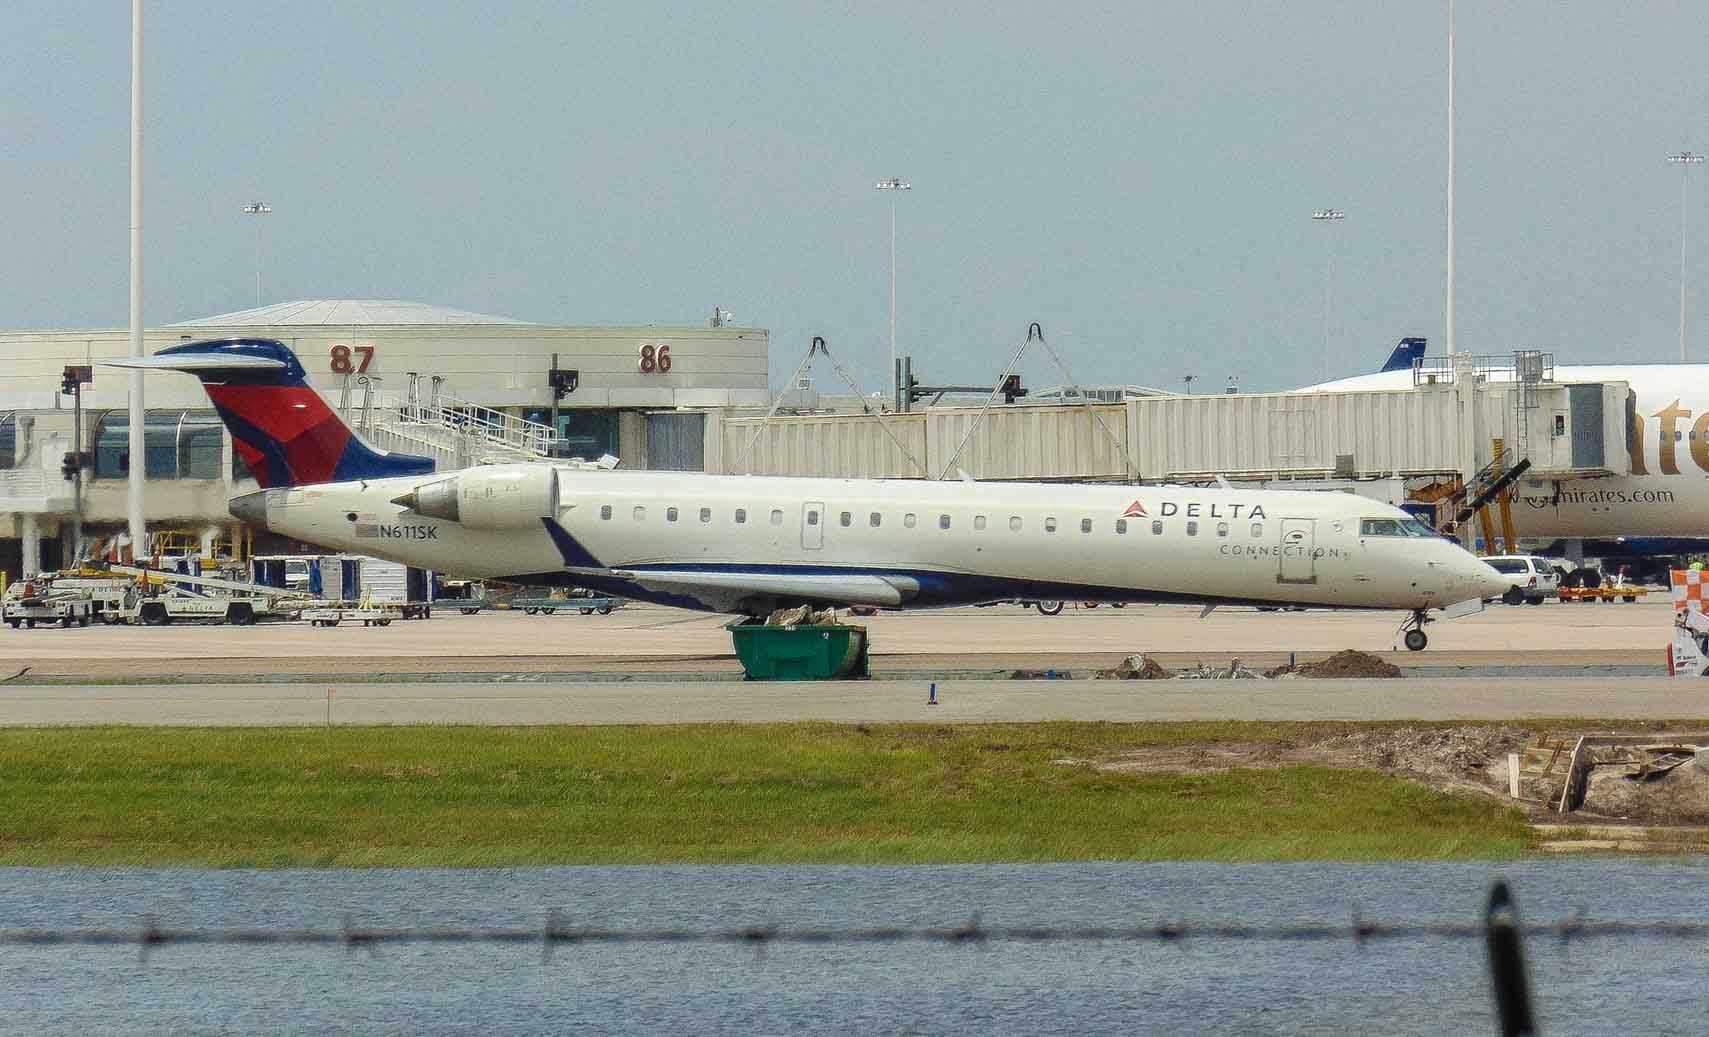 Canadair Regional Jet CRJ-700 (N611SK)